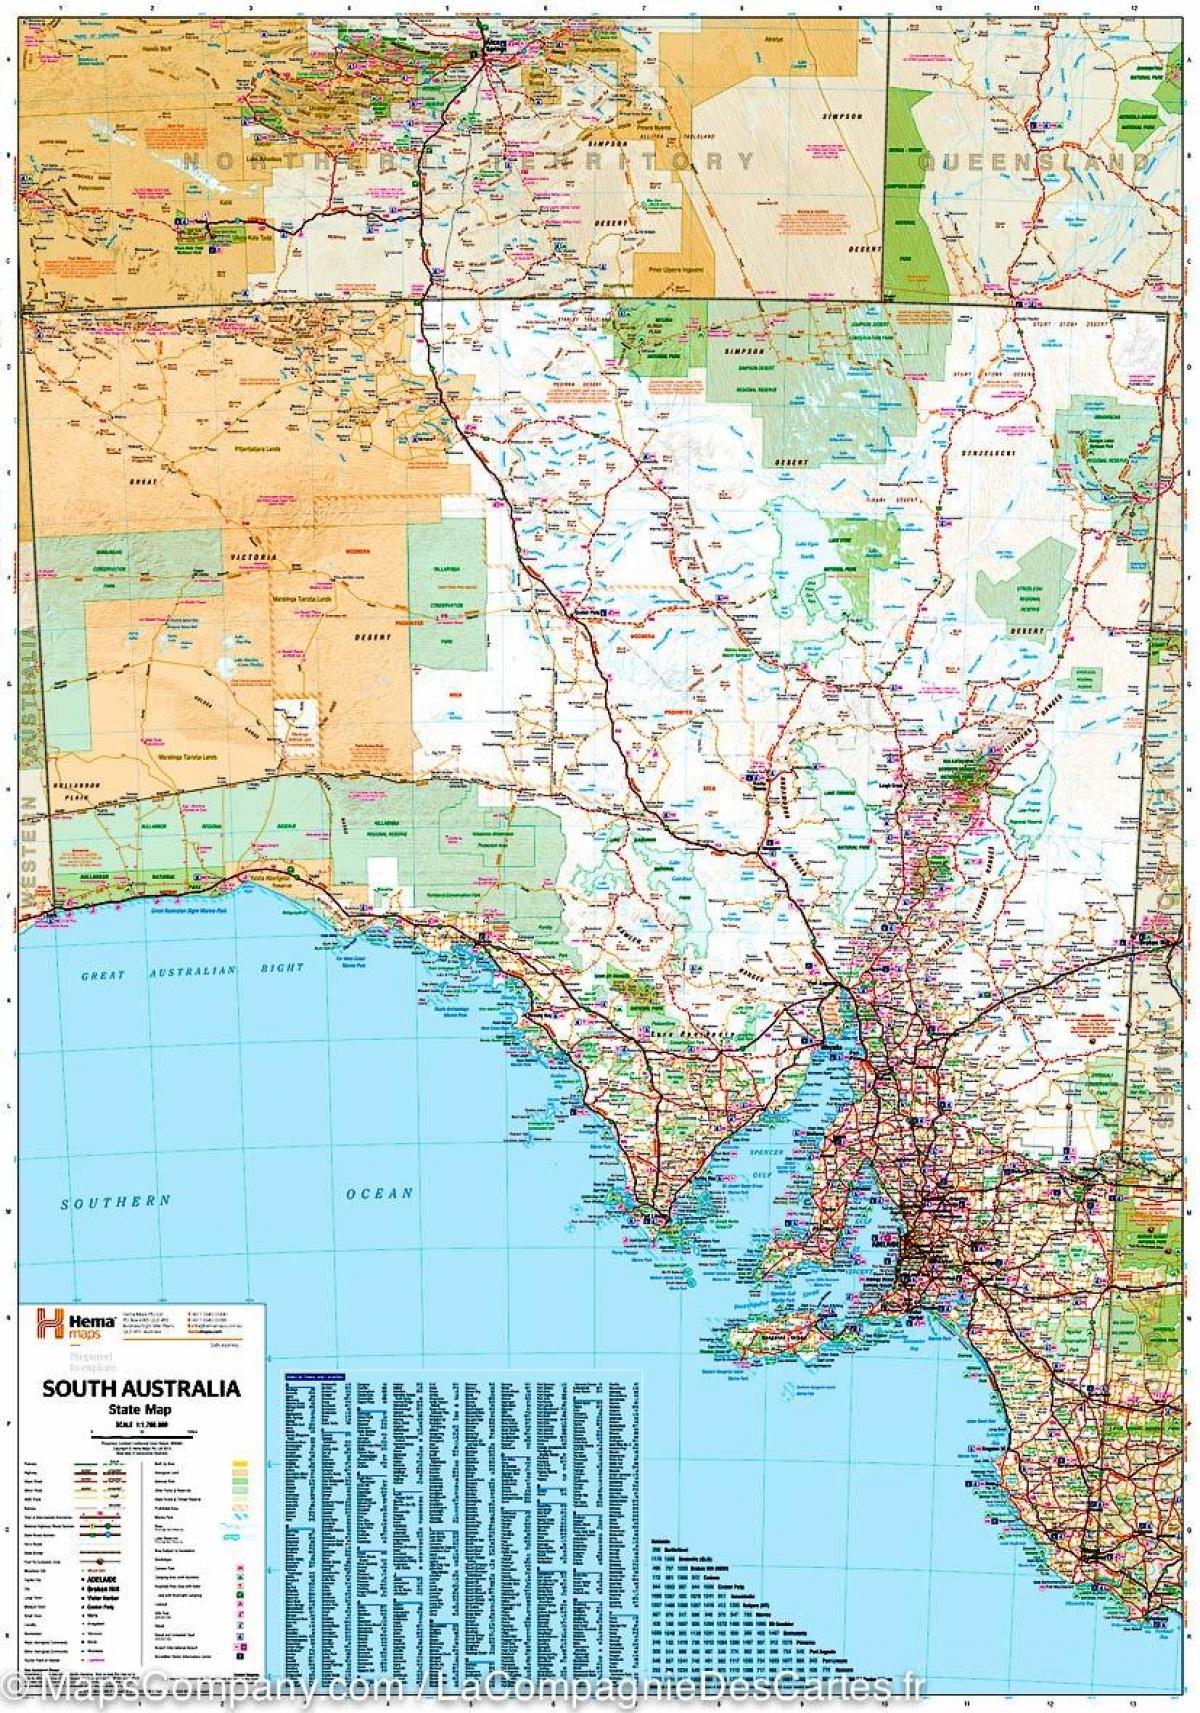 karta Južne Australije